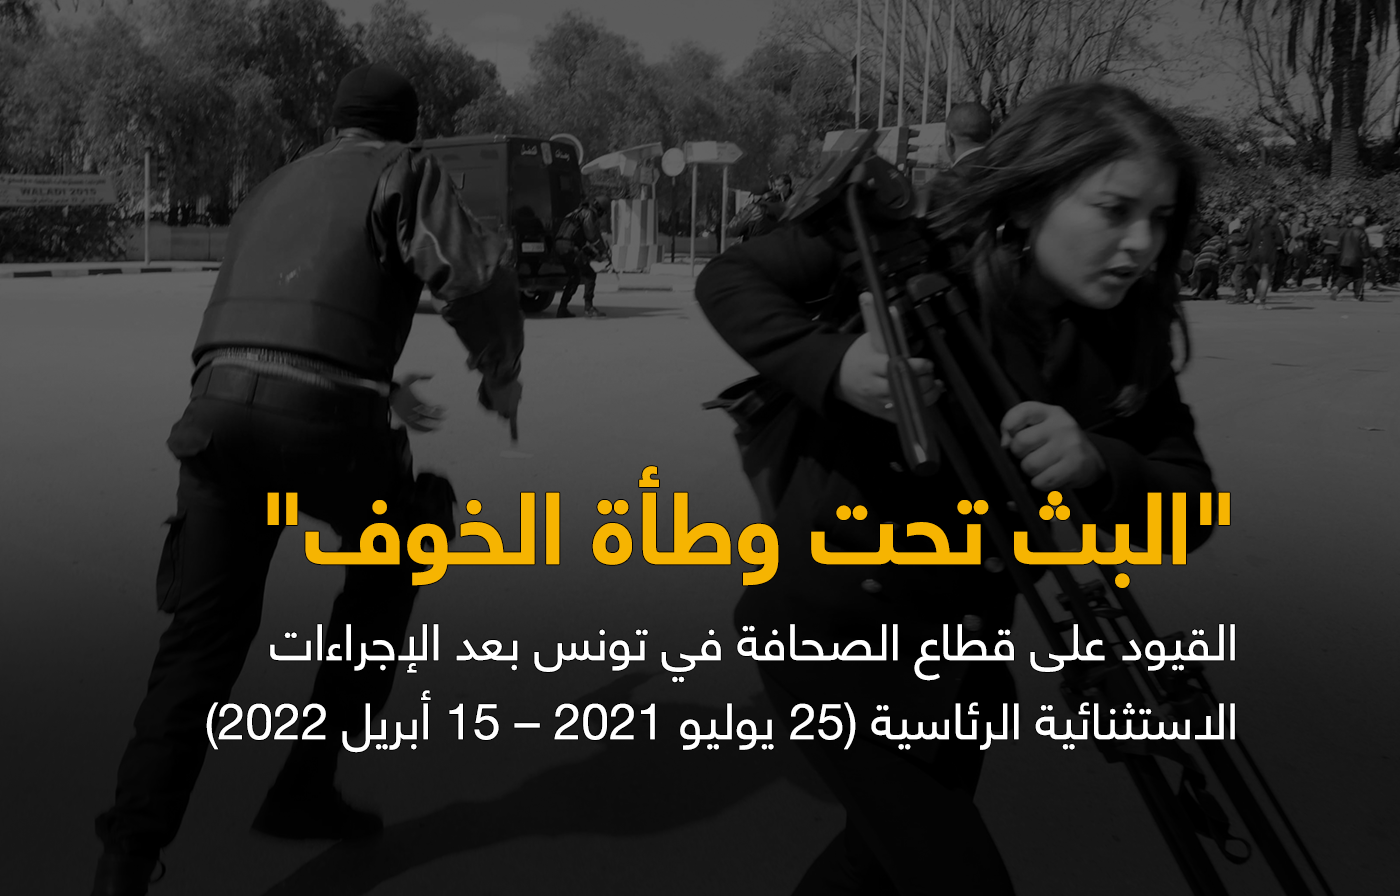 البث تحت وطأة الخوف.. الأورومتوسطي وصحافيون من أجل حقوق الإنسان يوثّقان انتهاكات غير مسبوقة ضد الصحافة في تونس